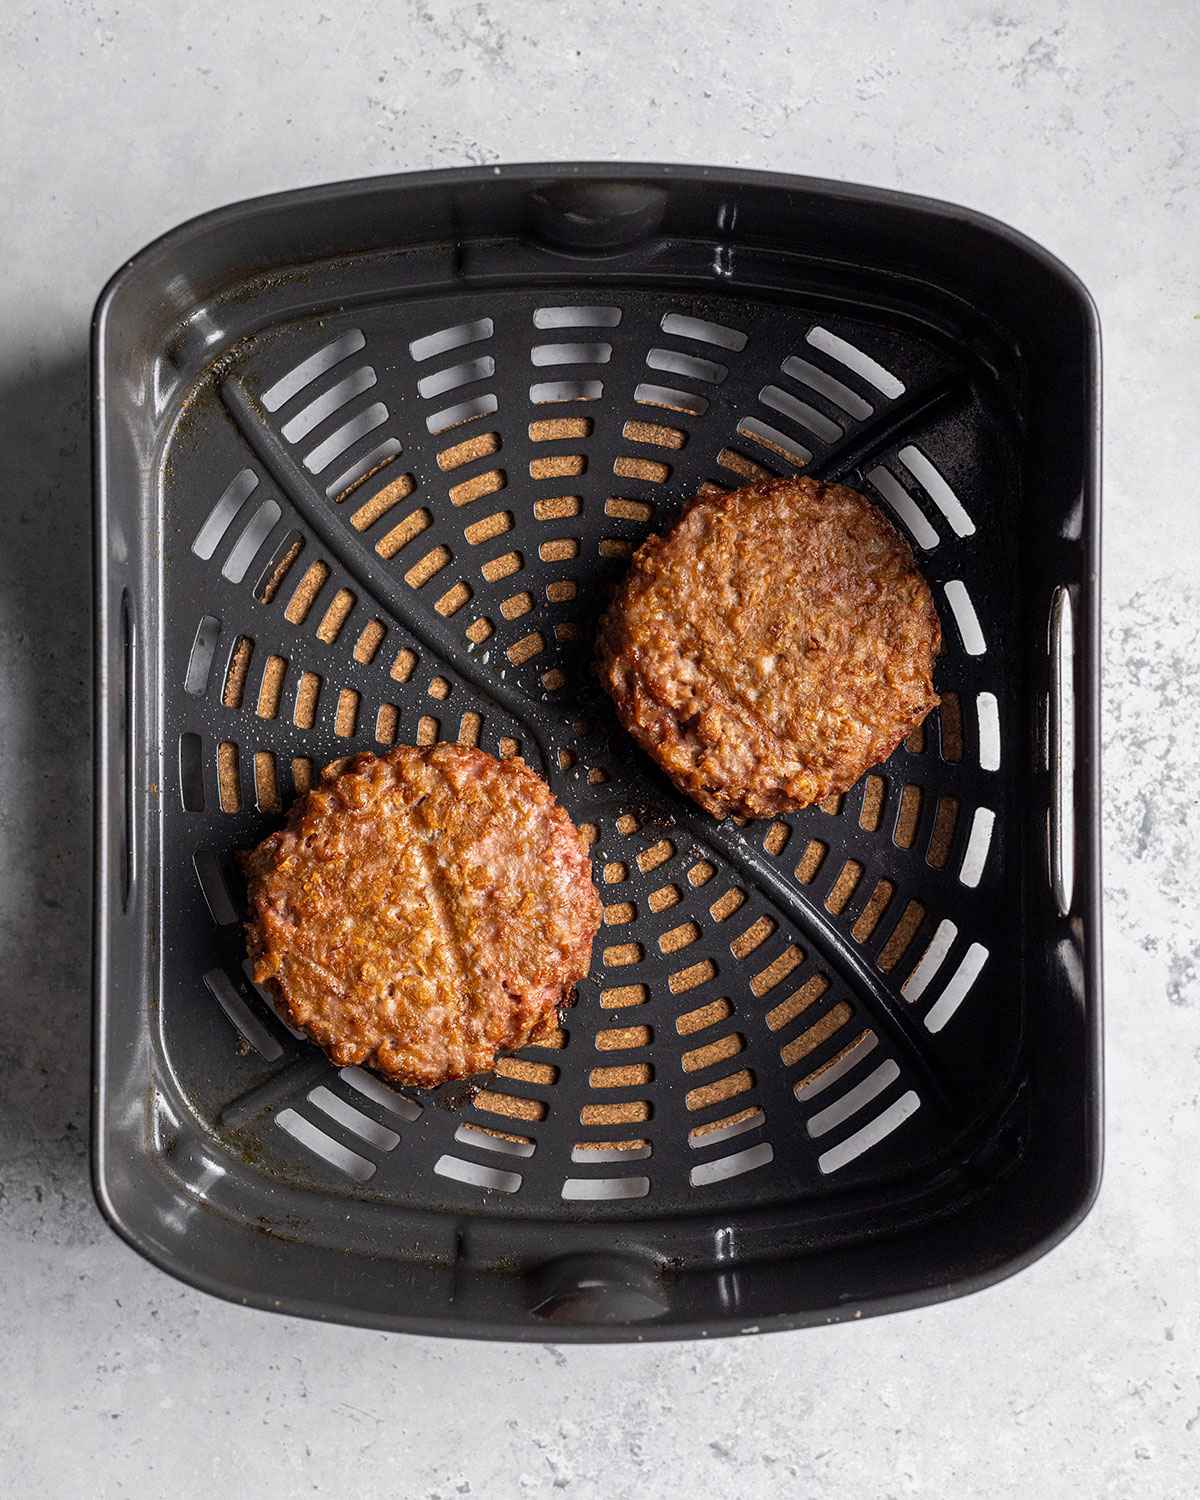 2 beyond meat burgers in an air fryer basket